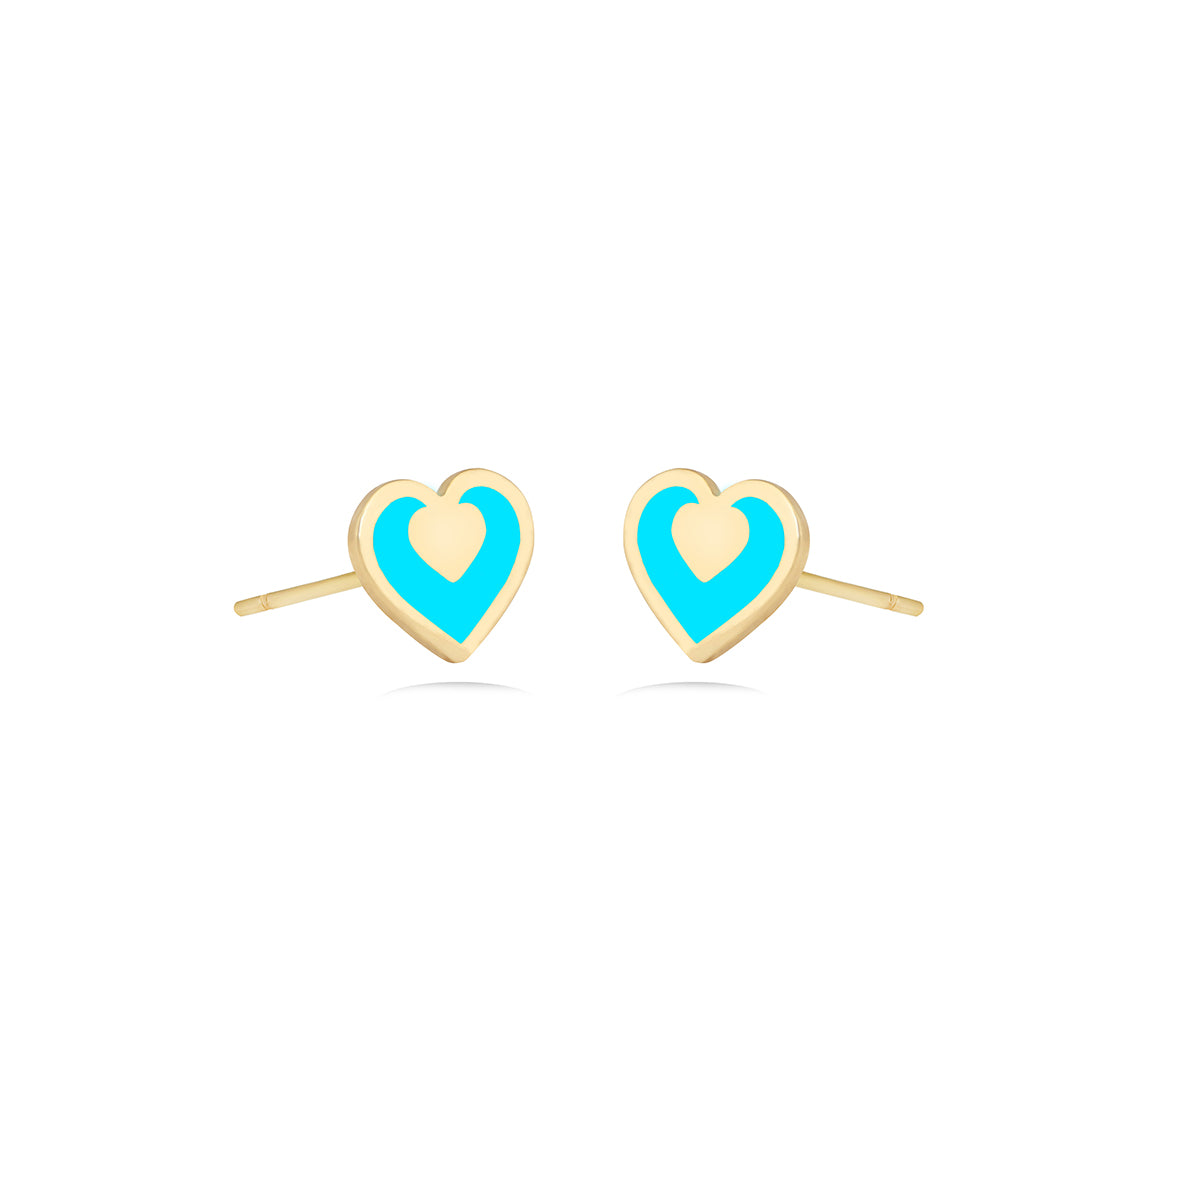 Green Candy Heart Earrings in 18k Yellow Gold